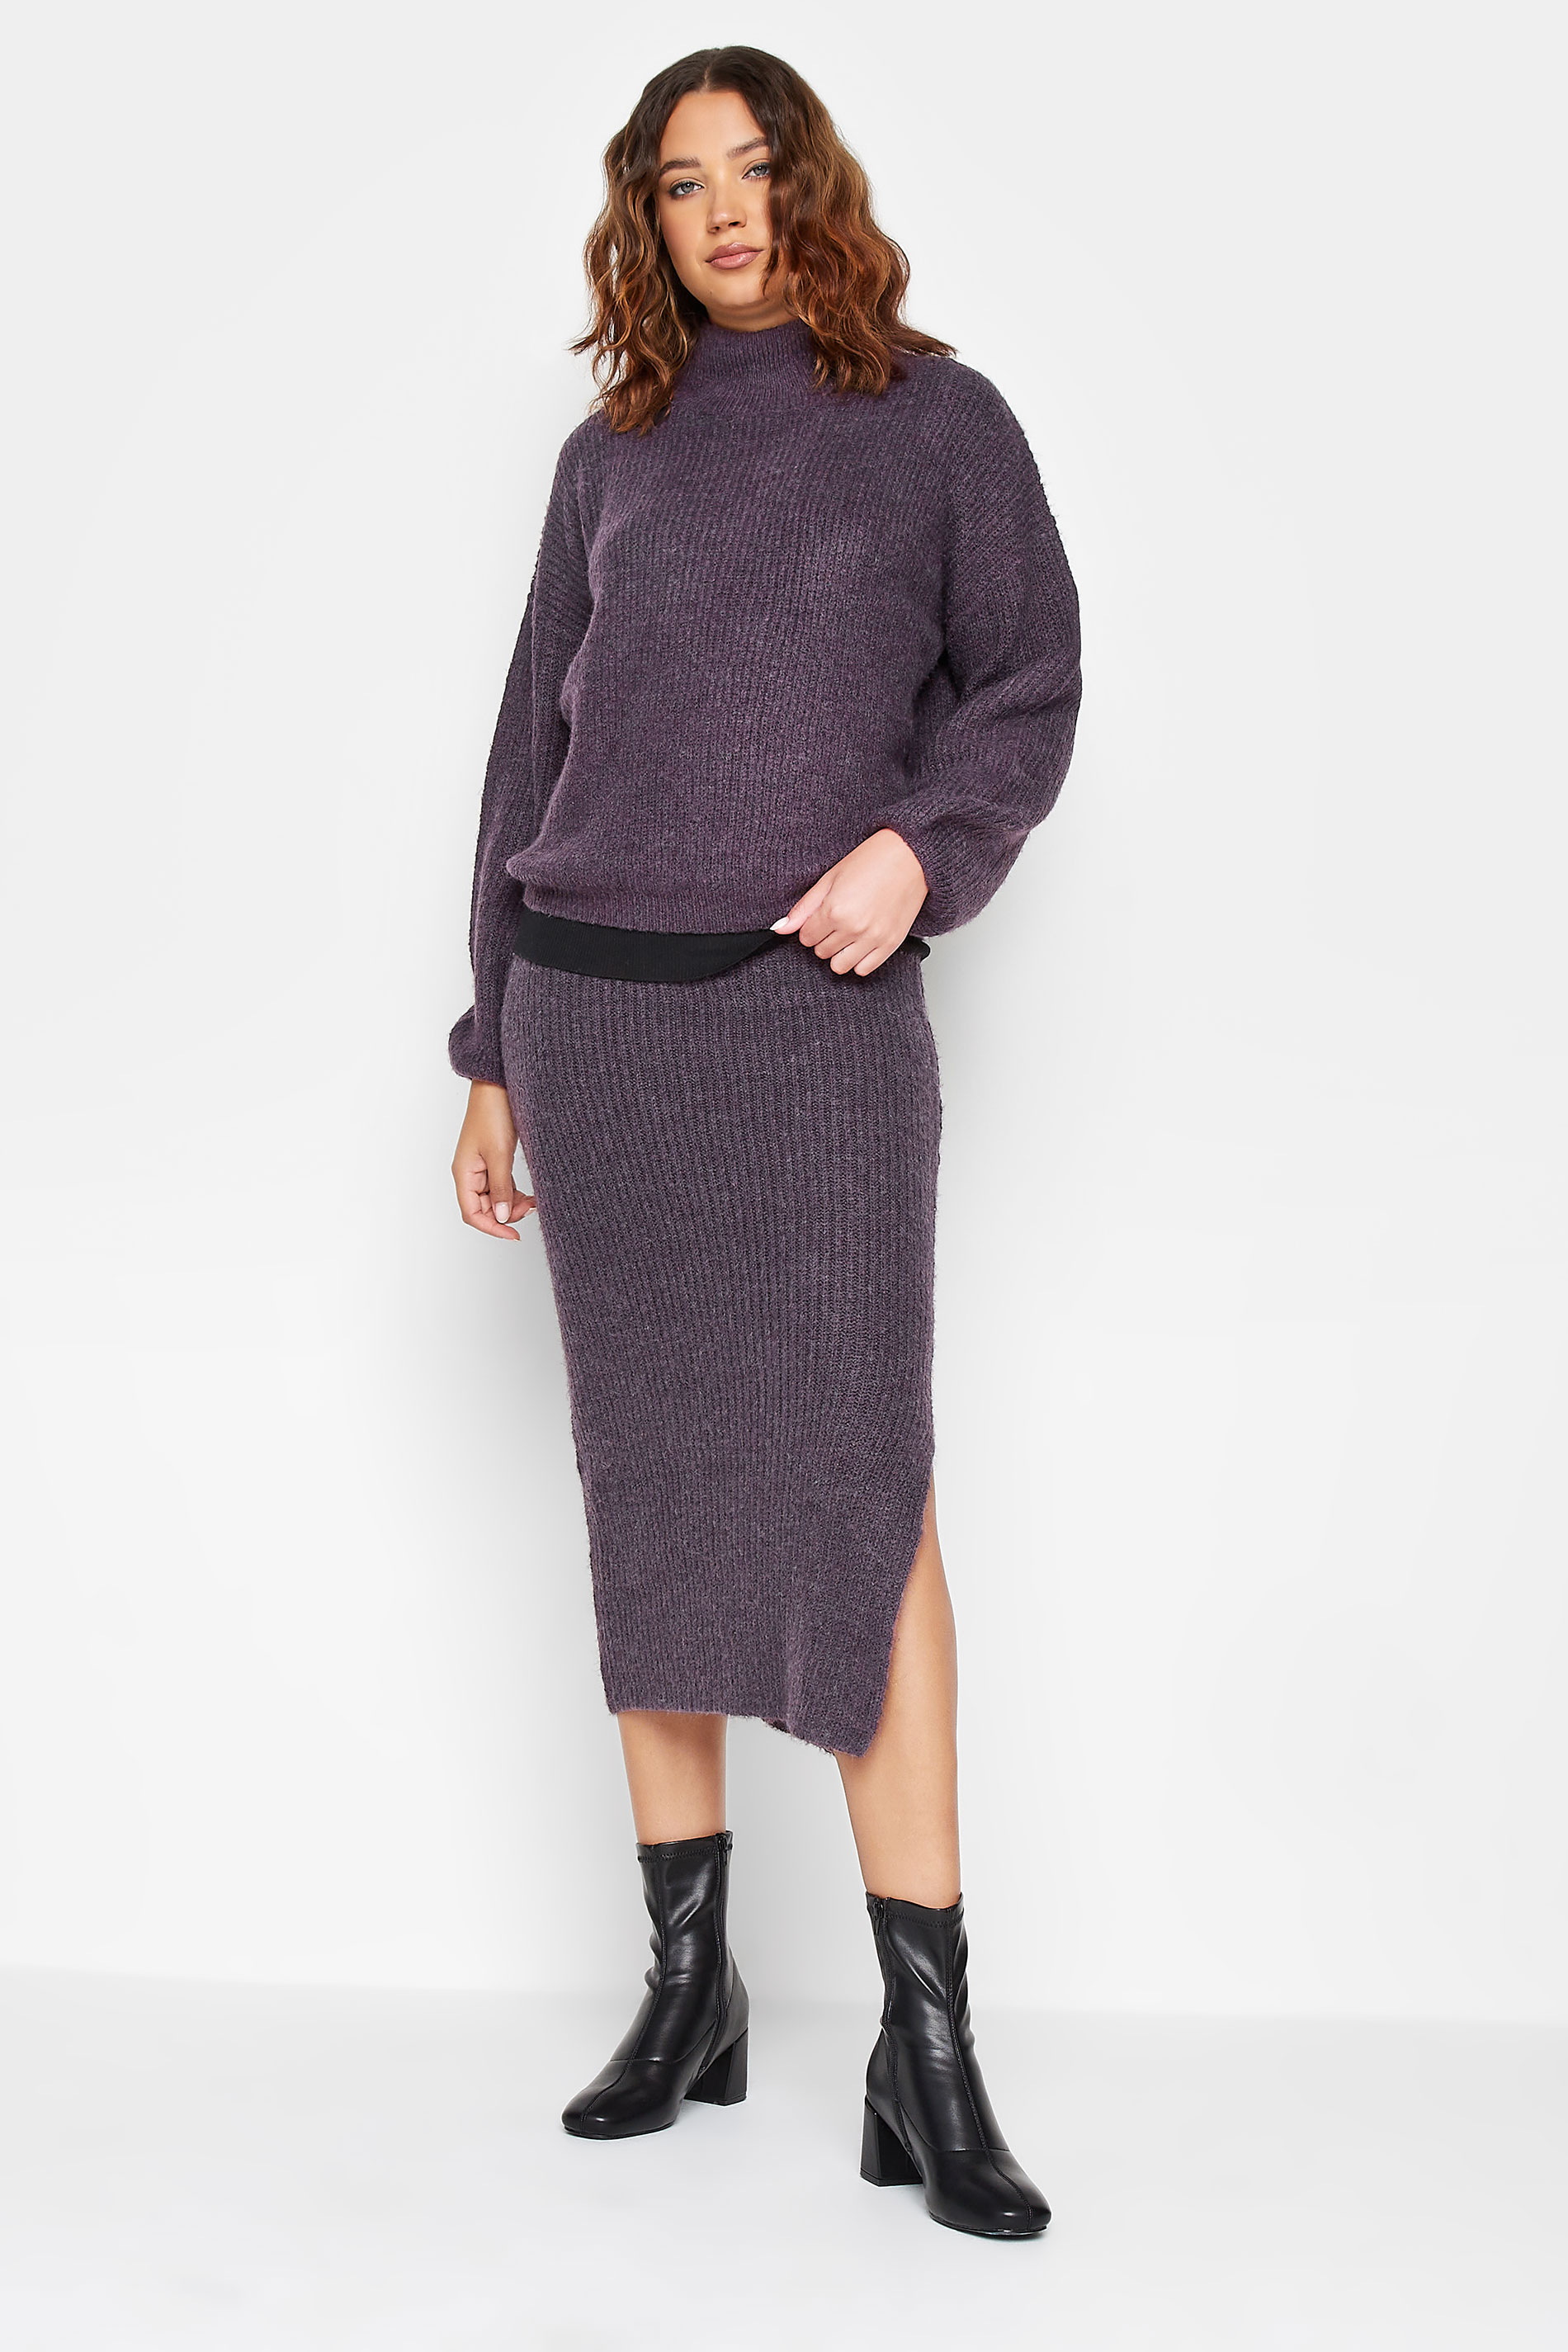 LTS Tall Dark Purple Midi Knitted Skirt | Long Tall Sally 2